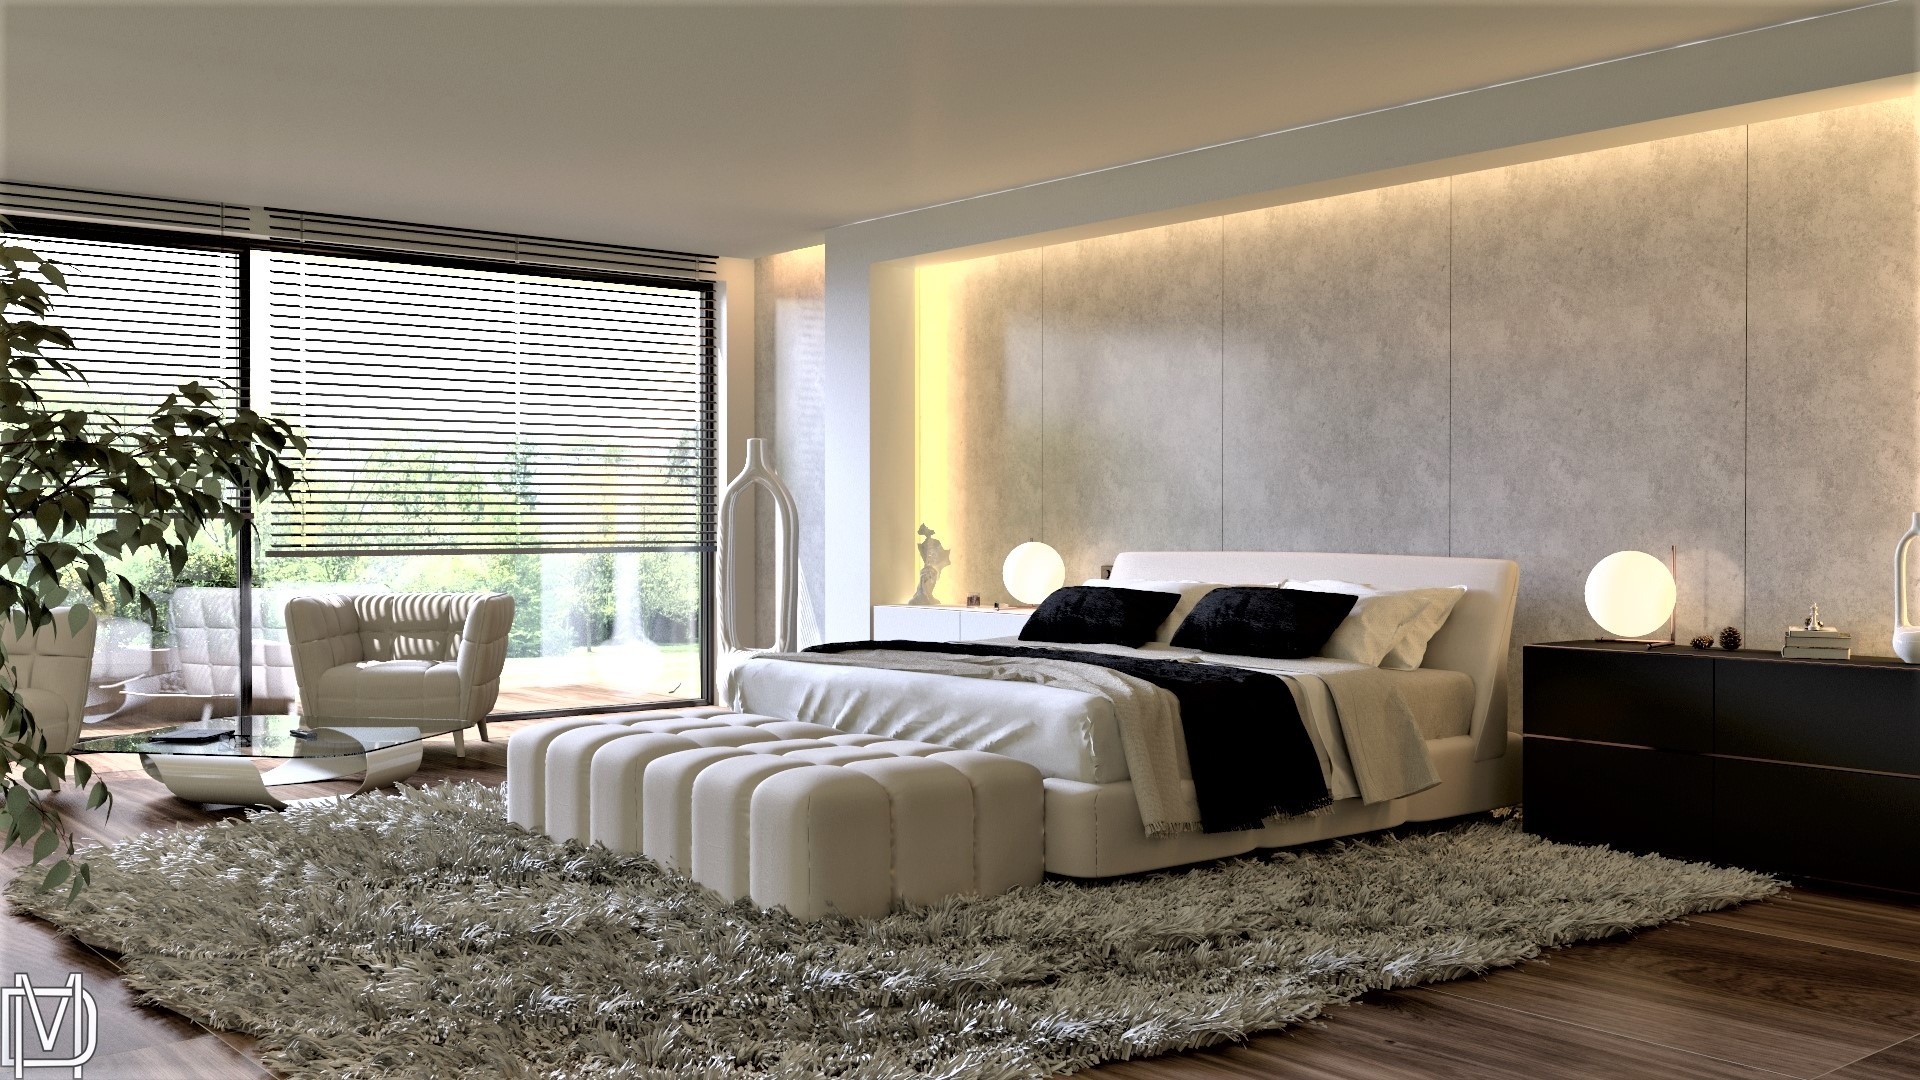 Sypialnia w jasnej kolorystyce, ściana z betonu architektonicznego, białe skórzane łóżko